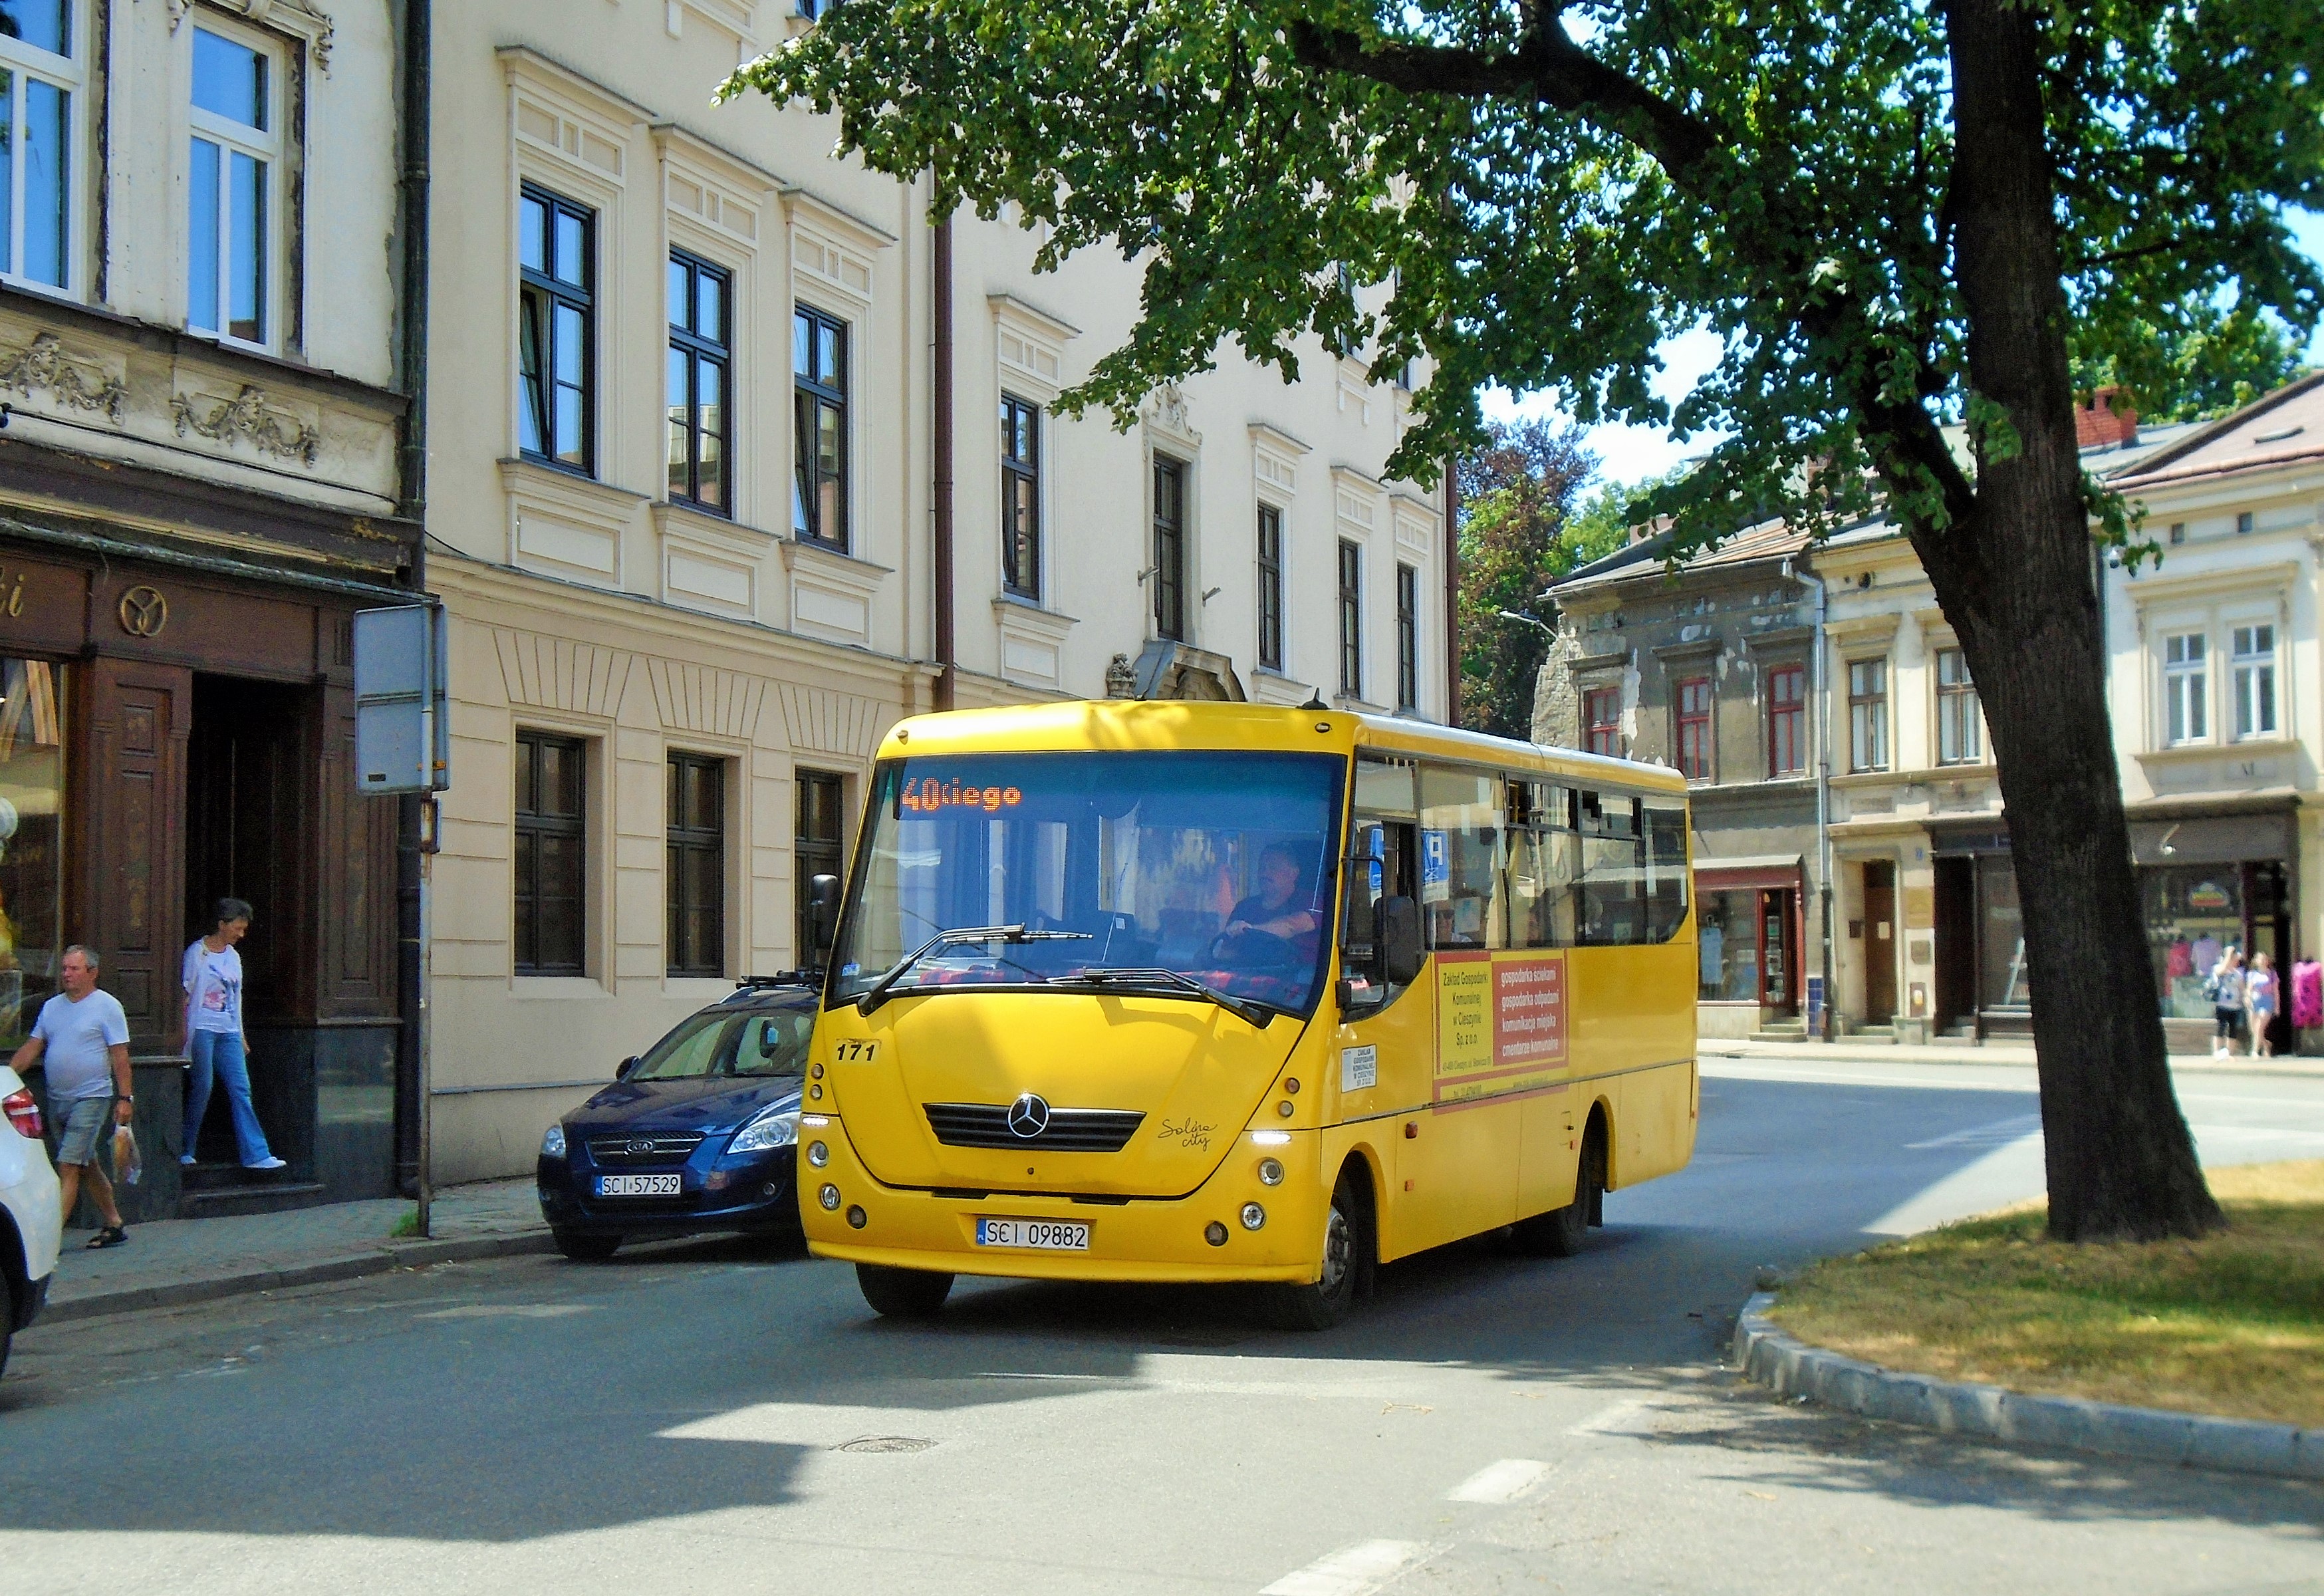 171 se blíží na lince 40 k zastávce Garncarska v centru Cieszyna